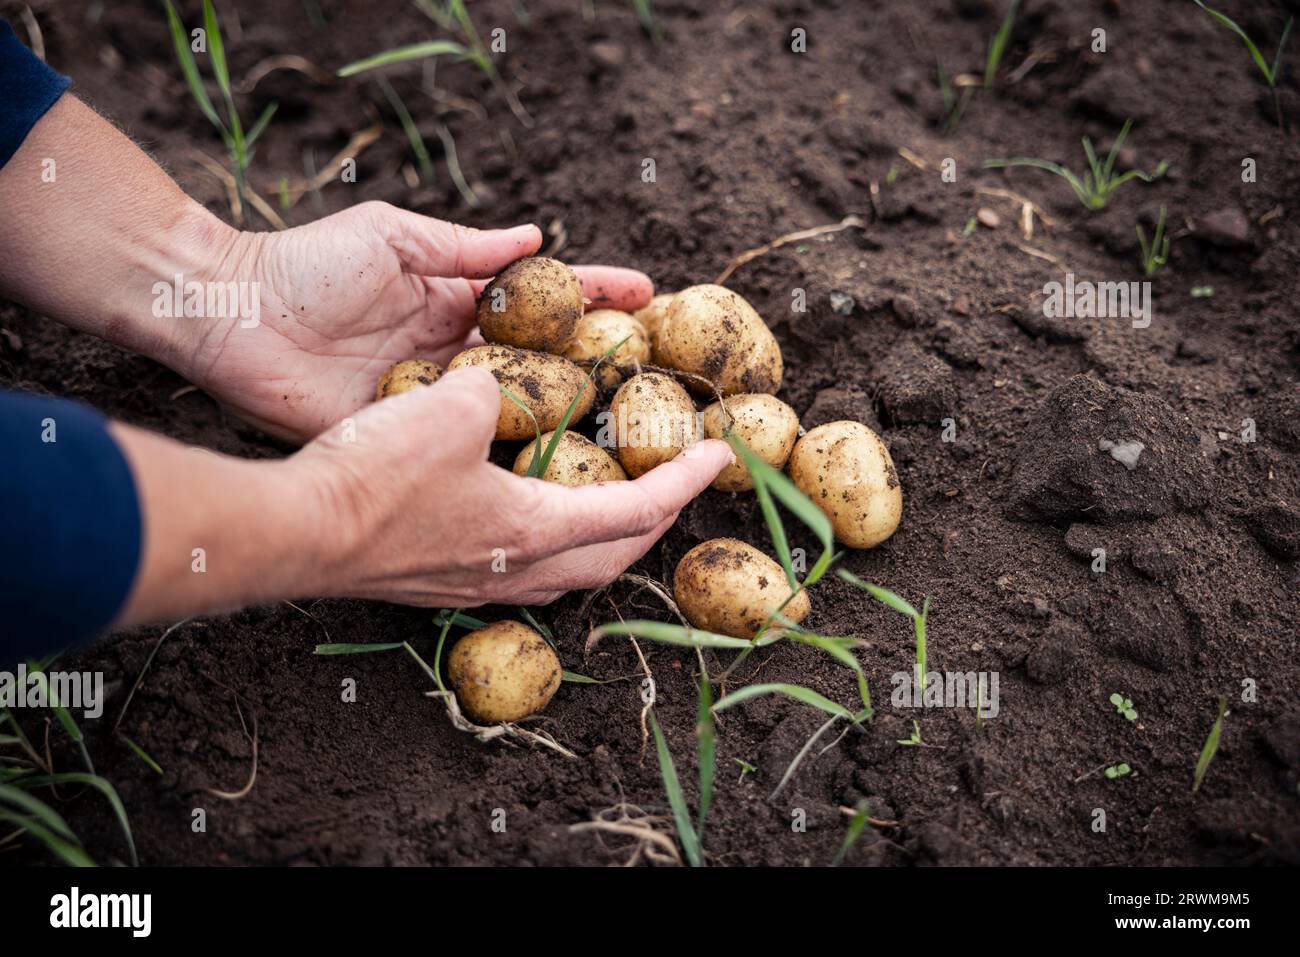 le mani cuocheranno delicatamente una raccolta di patate appena raccolte e terrose. Le patate riposano su terreno sabbioso, vengono raccolte con cura, mettendo in mostra Foto Stock